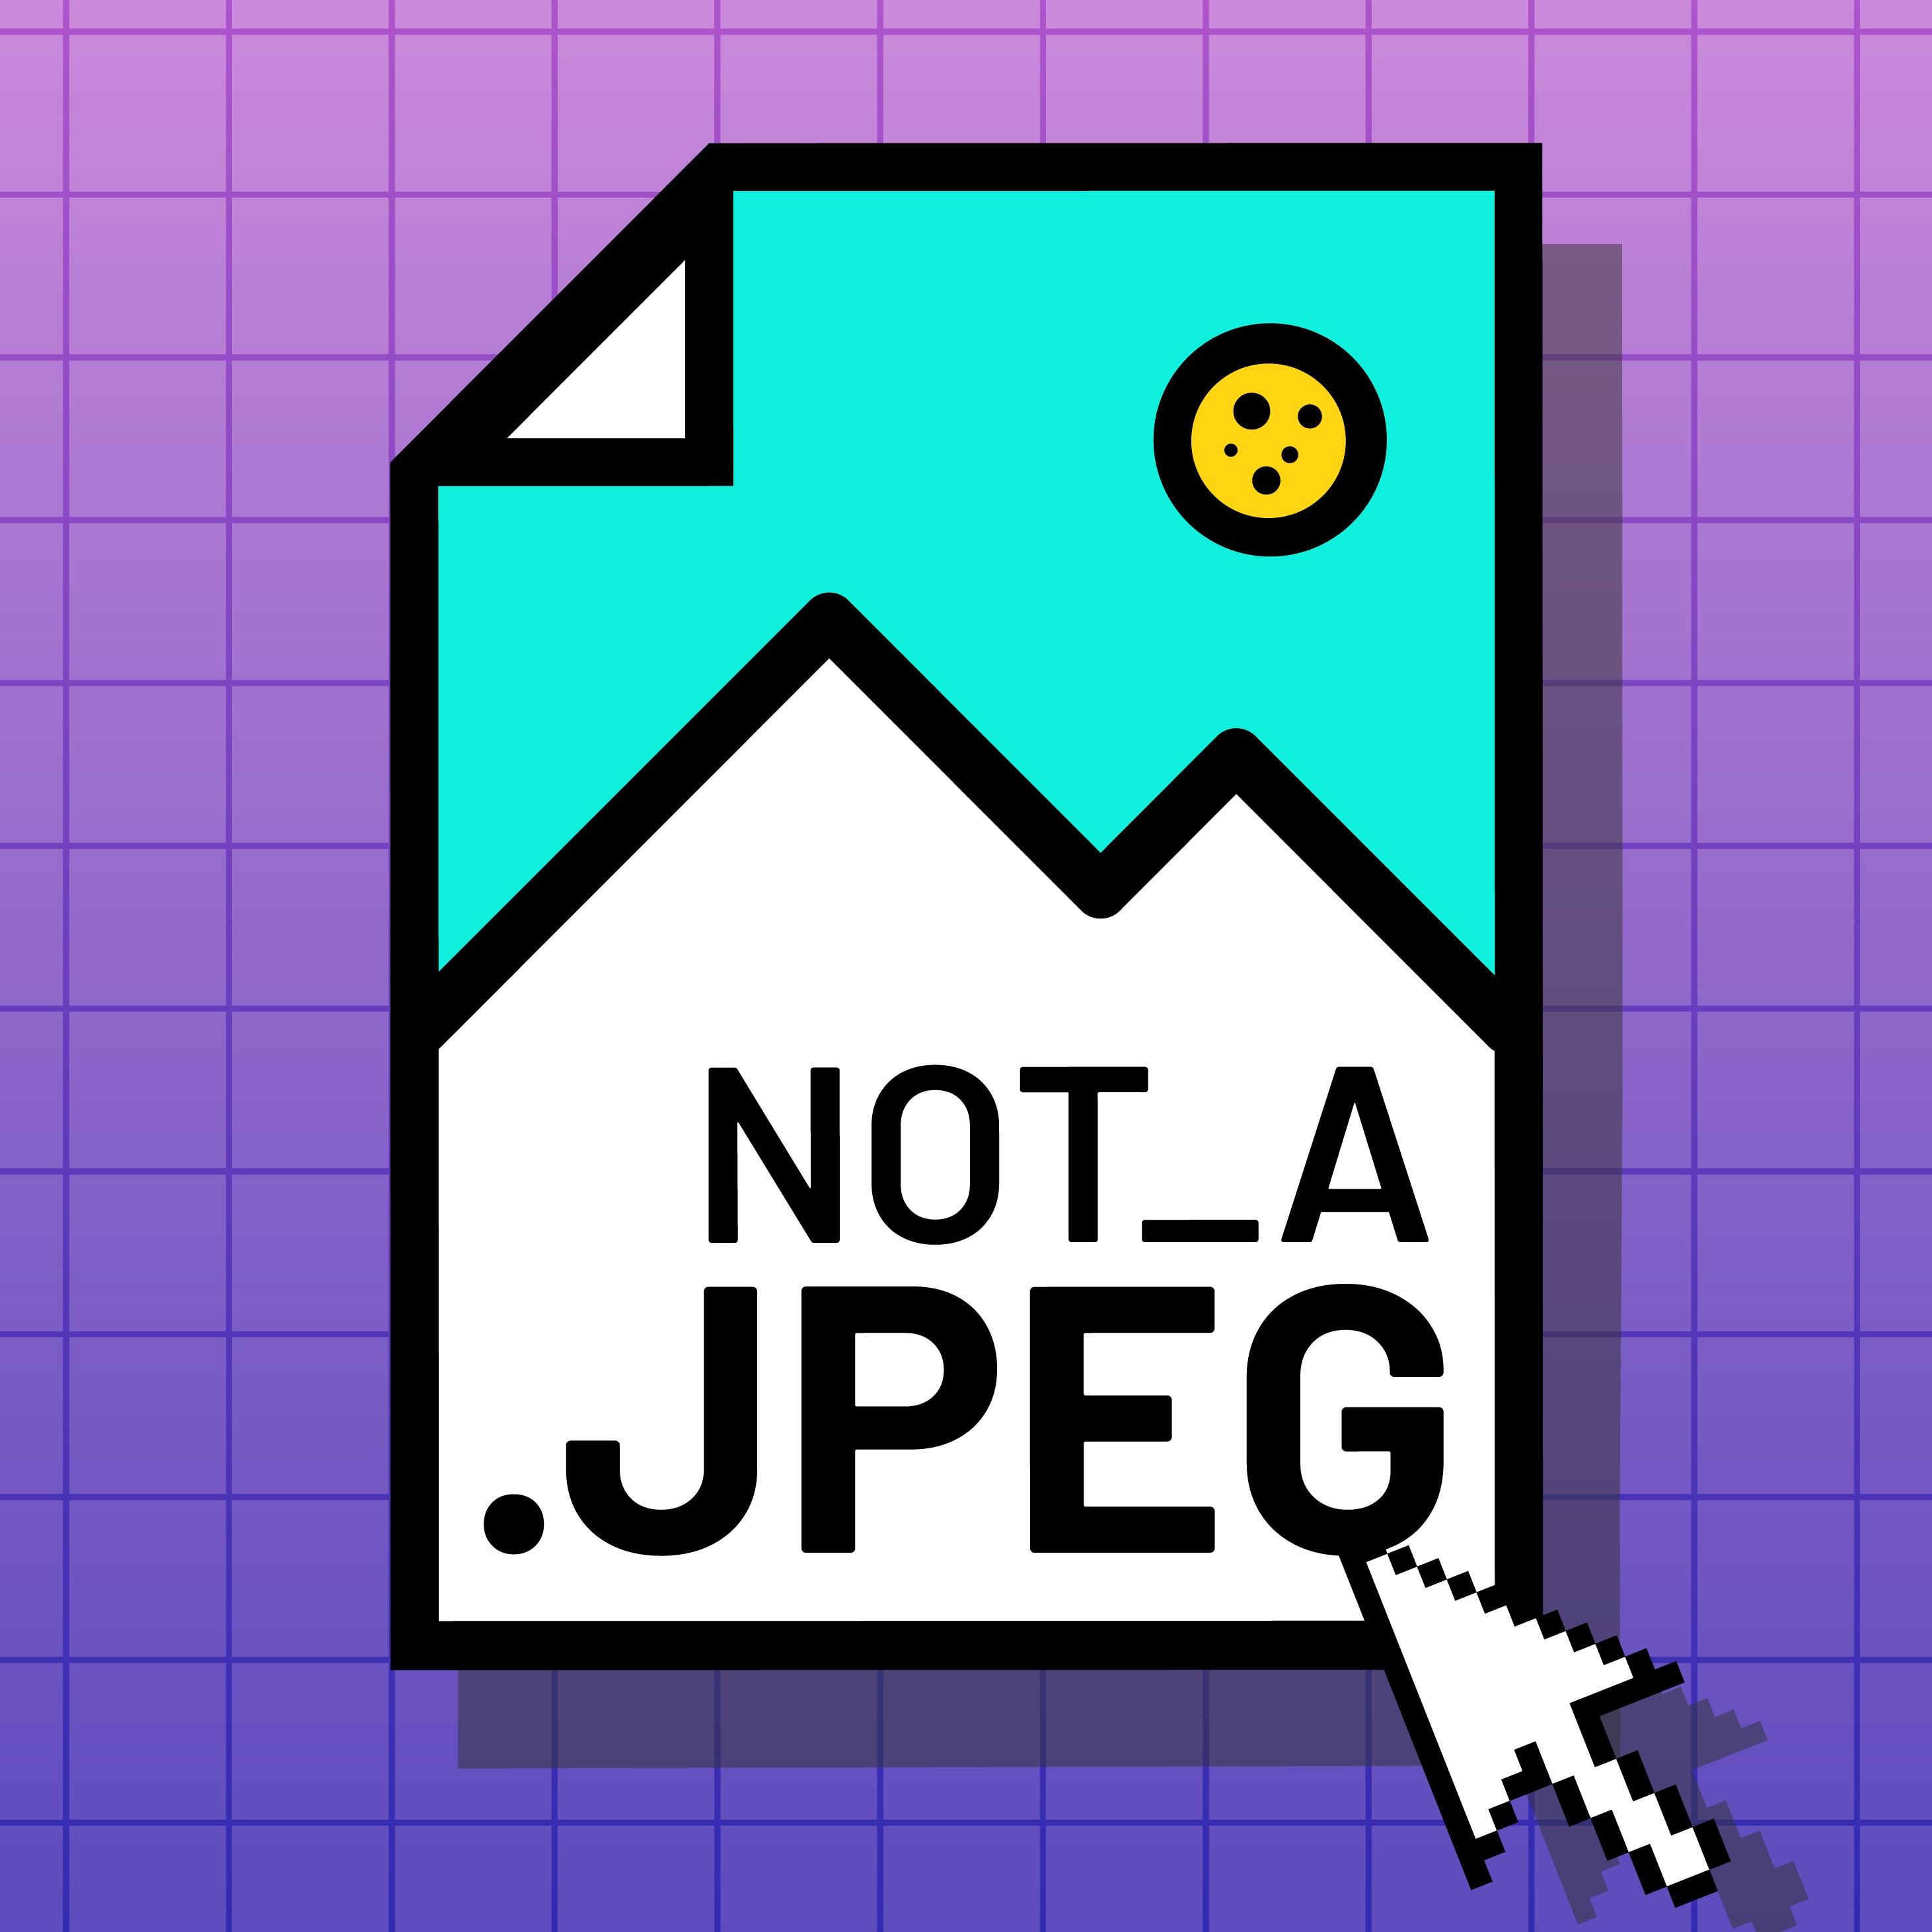 Not a JPEG